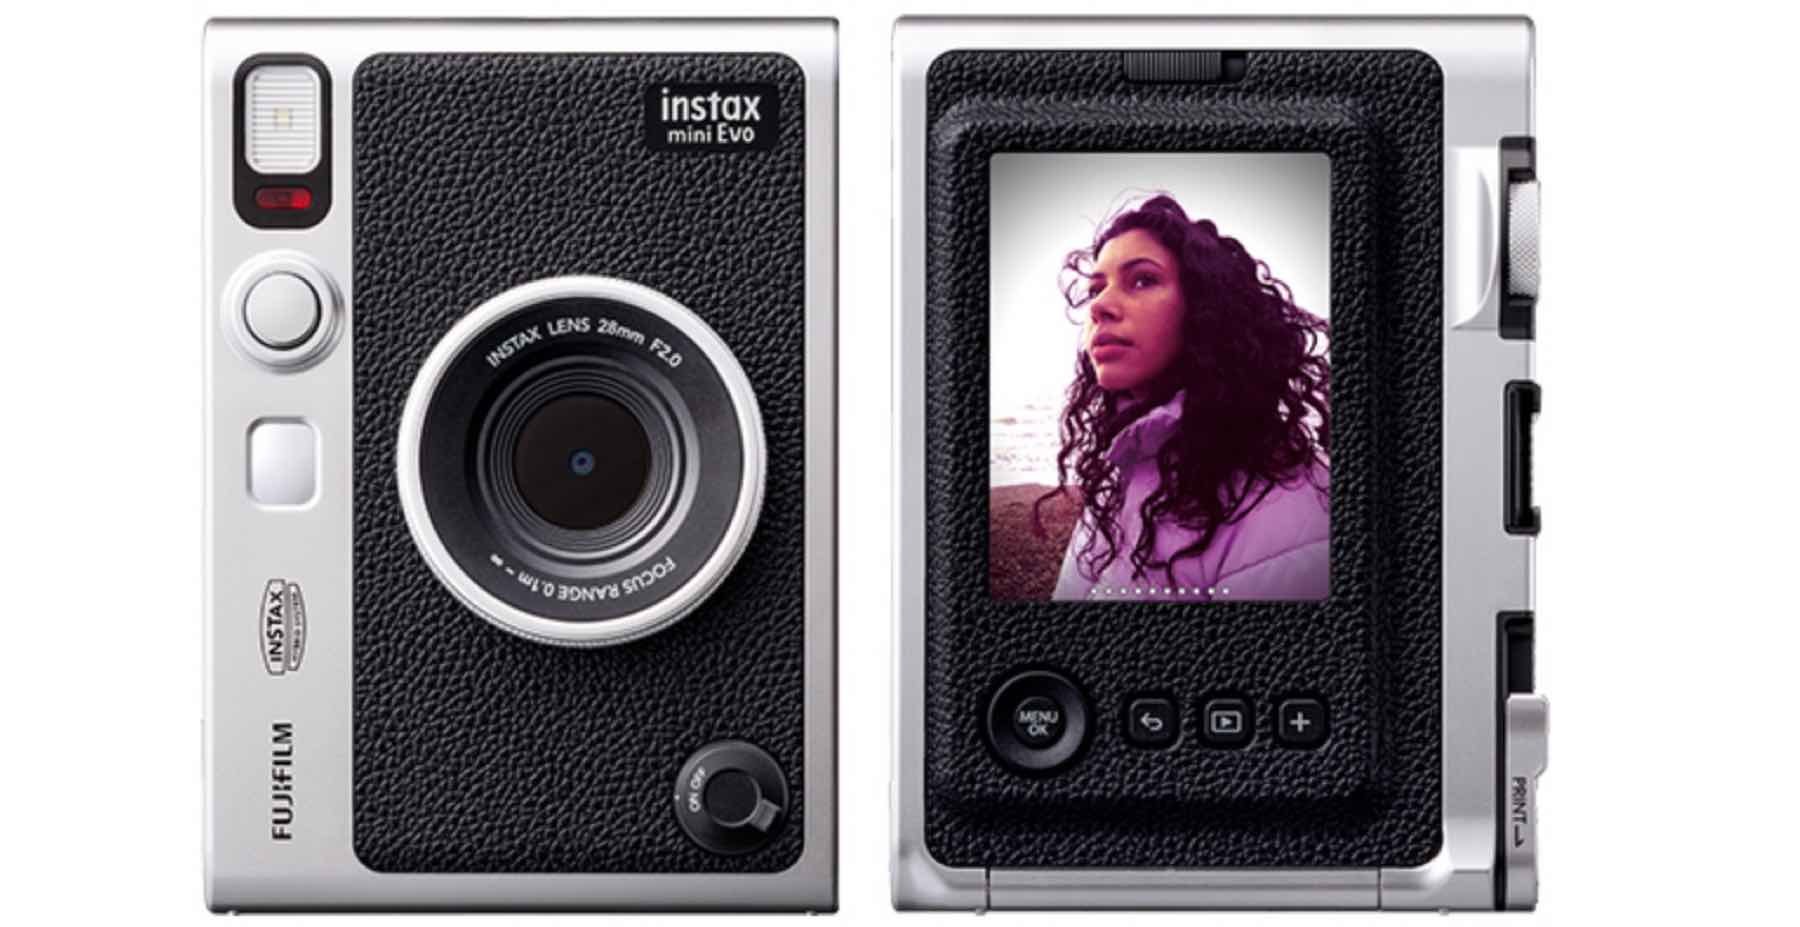 Fujifilm launches Hybrid Instant Camera “Instax Mini Evo” - Fuji 